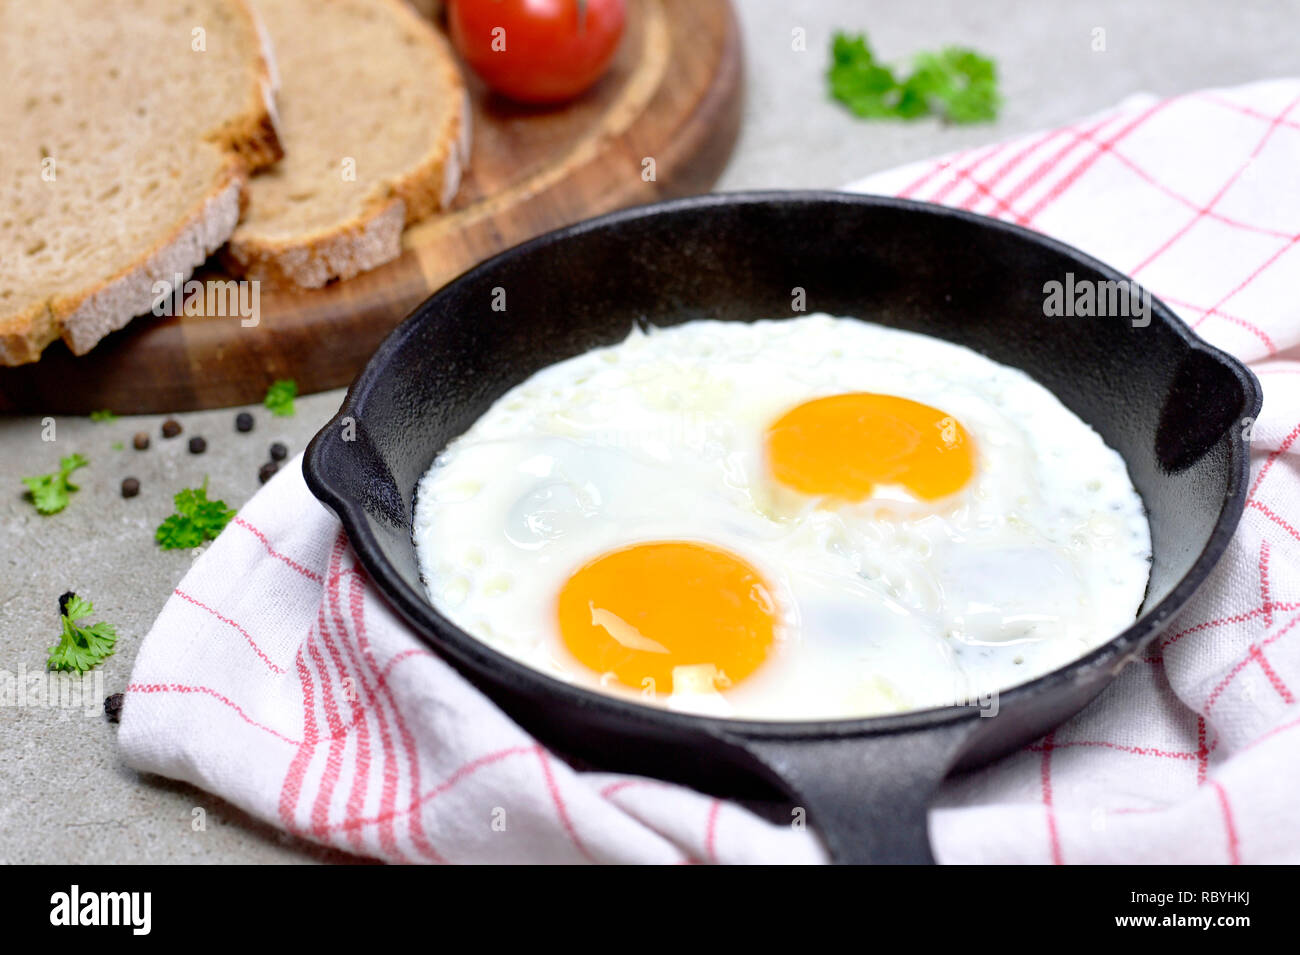 Lecker Spiegelei in einer gusseisernen Pfanne. Blick von oben auf die Eier und Brot, Frühstück Szene. Stockfoto